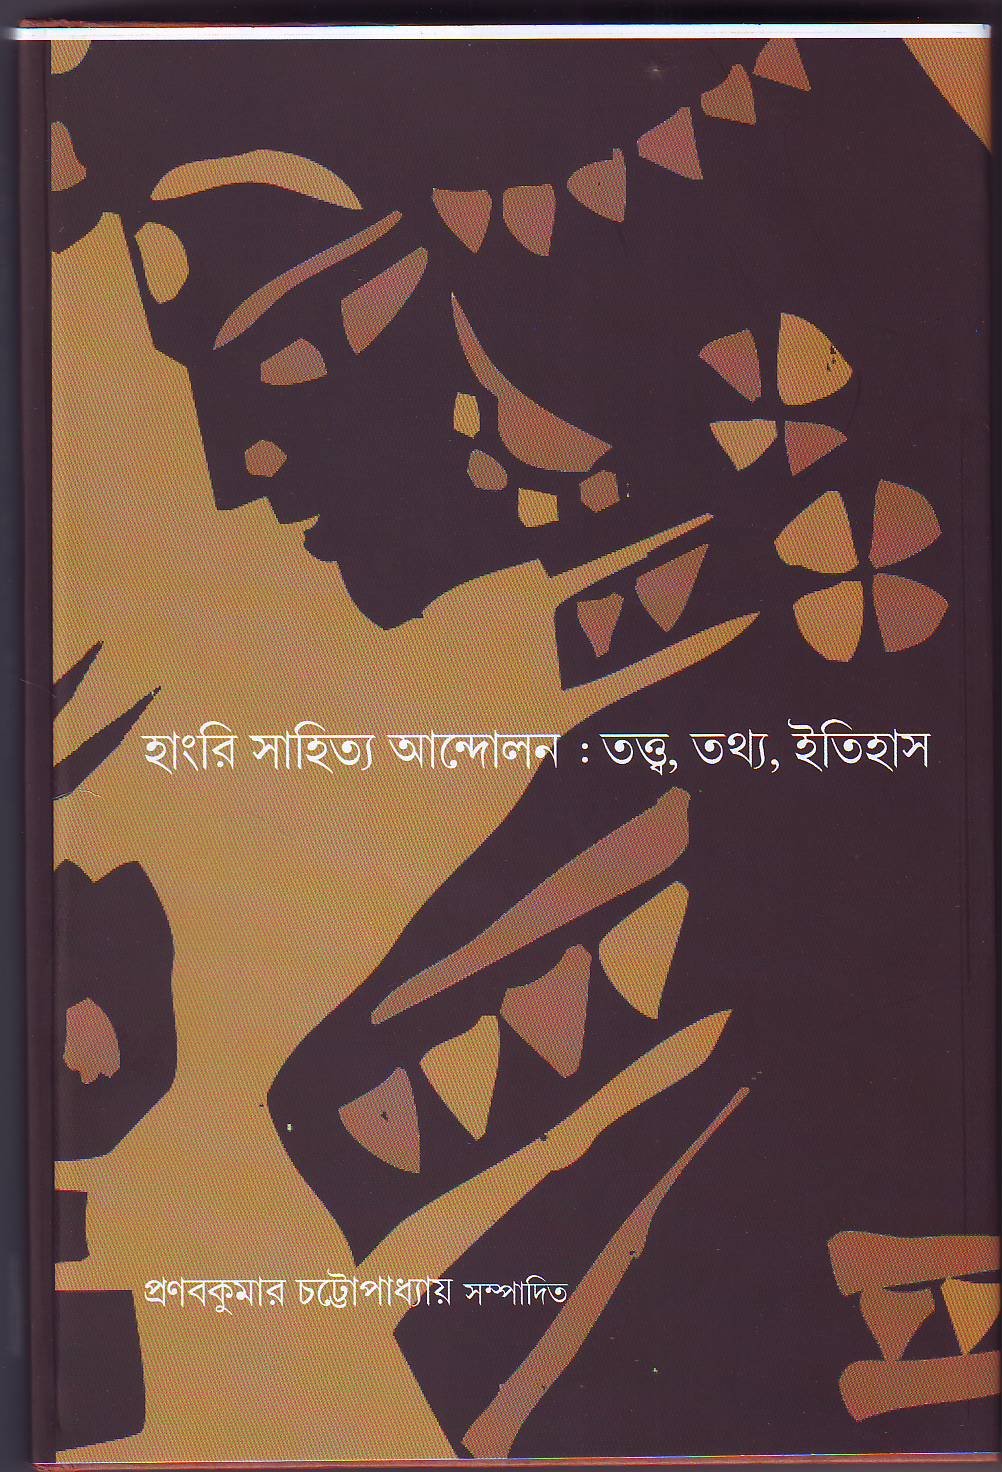 Publisher : Prativas, 18A Gobinda Mandal Road, Calcutta - 700 002, India